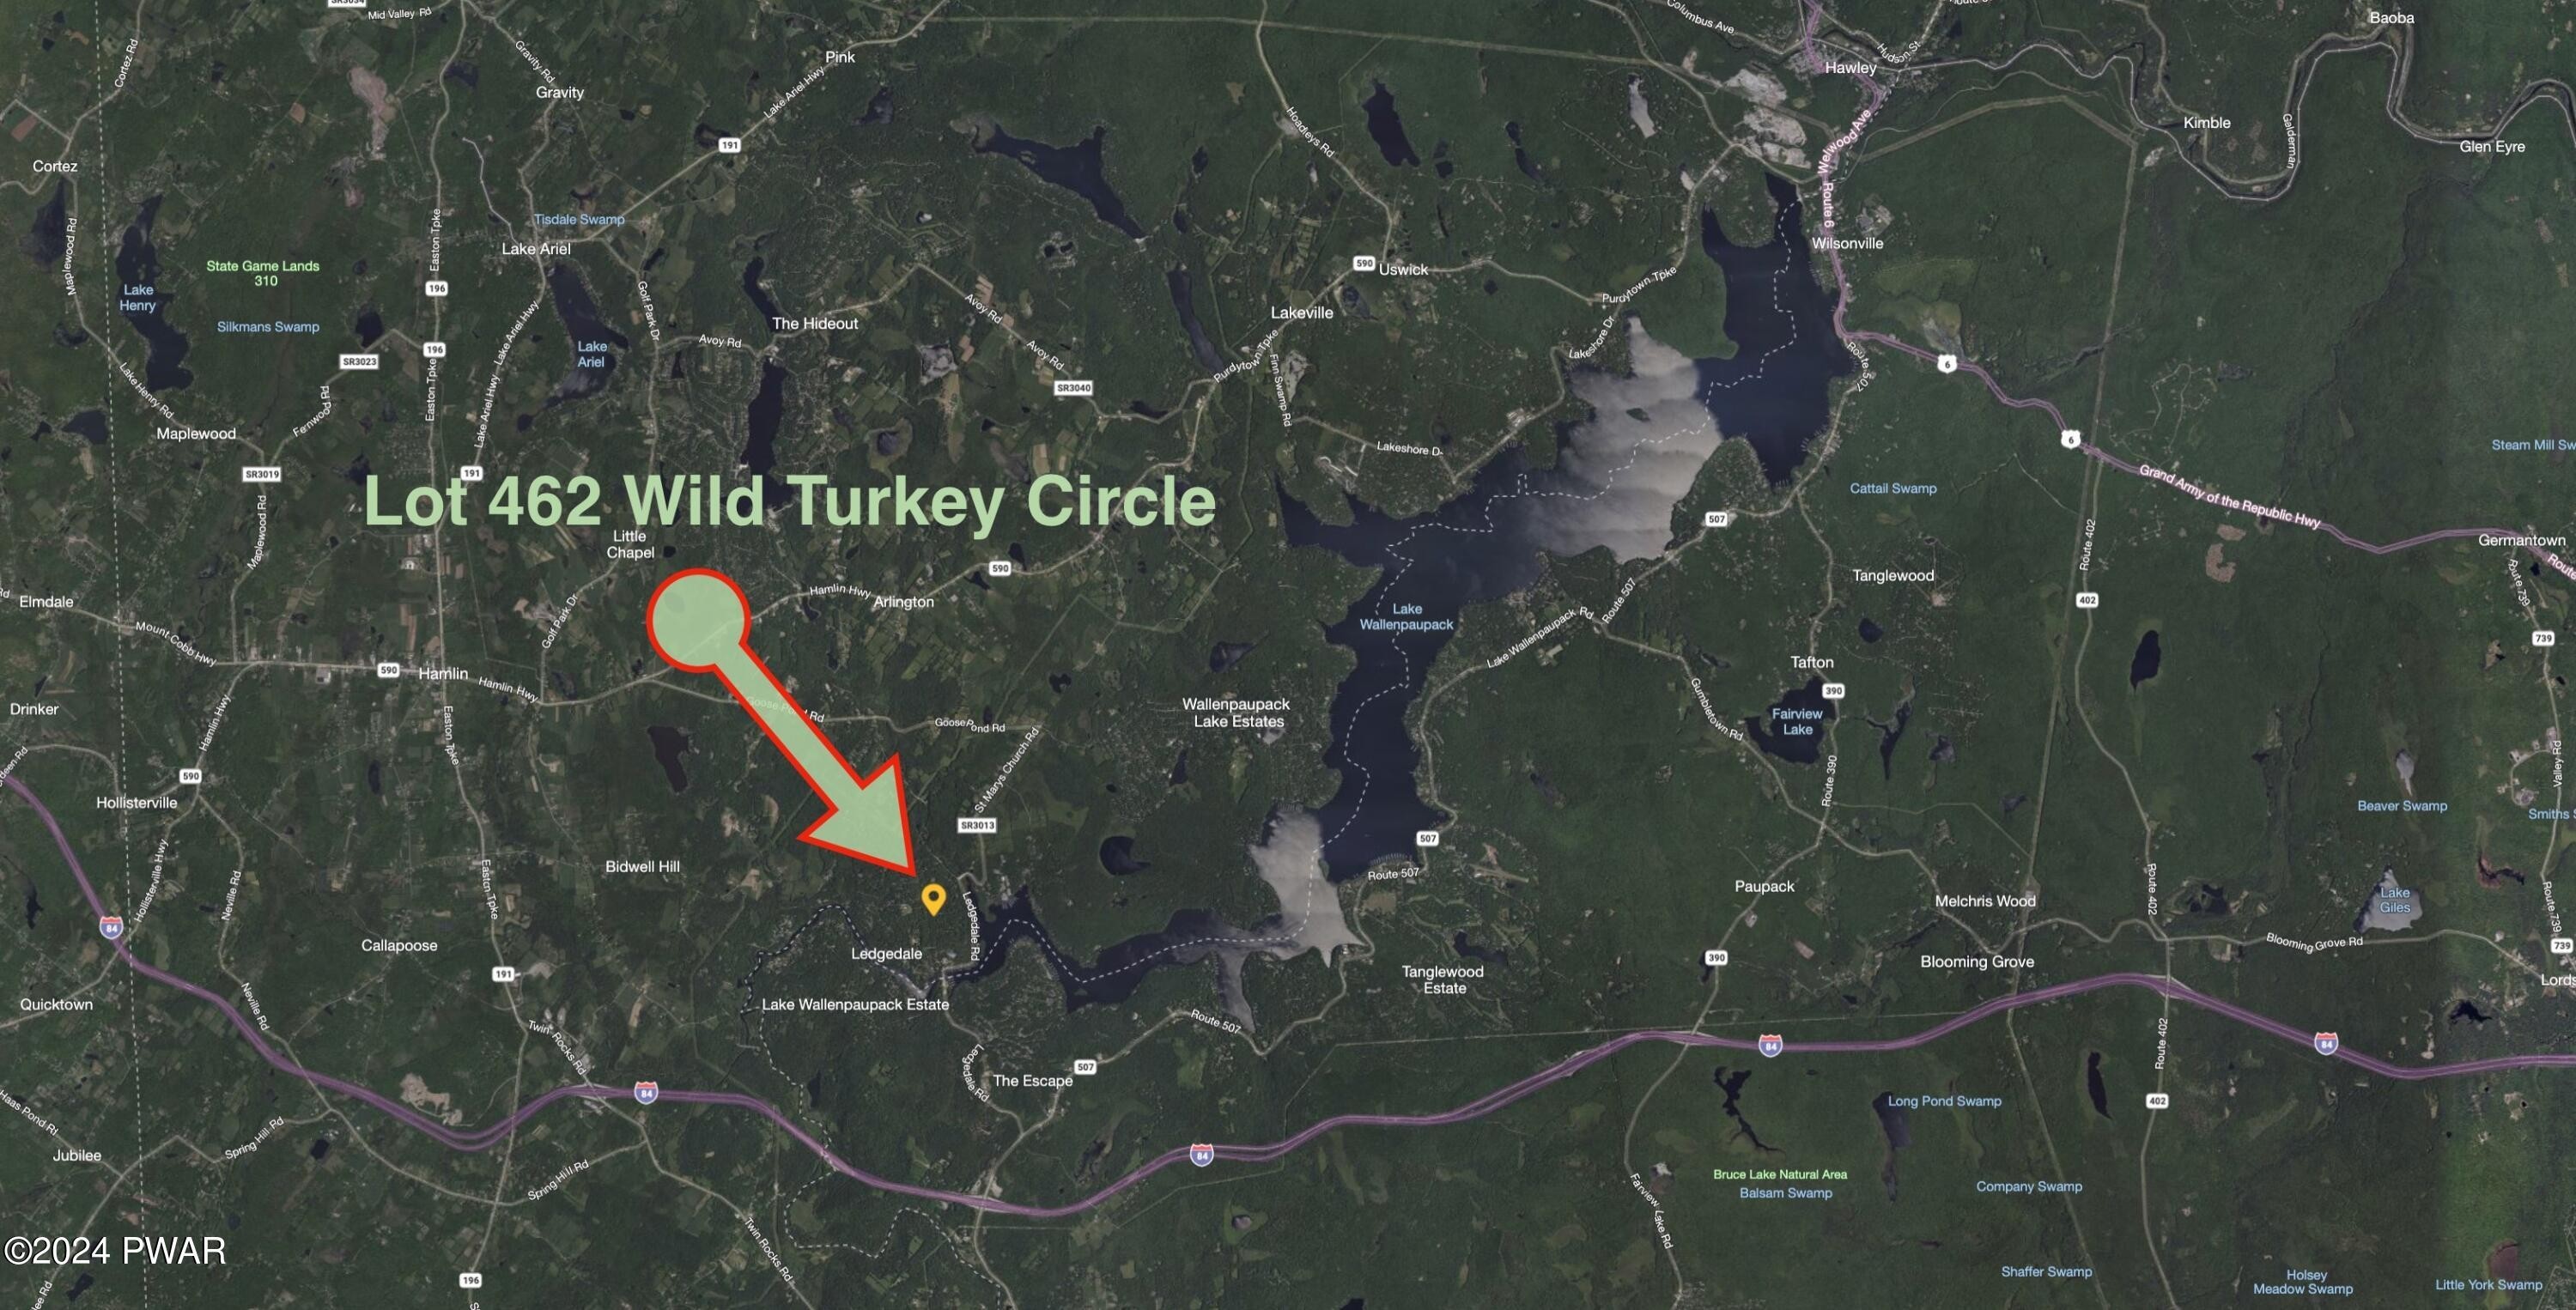 3. 462 Wild Turkey Circle